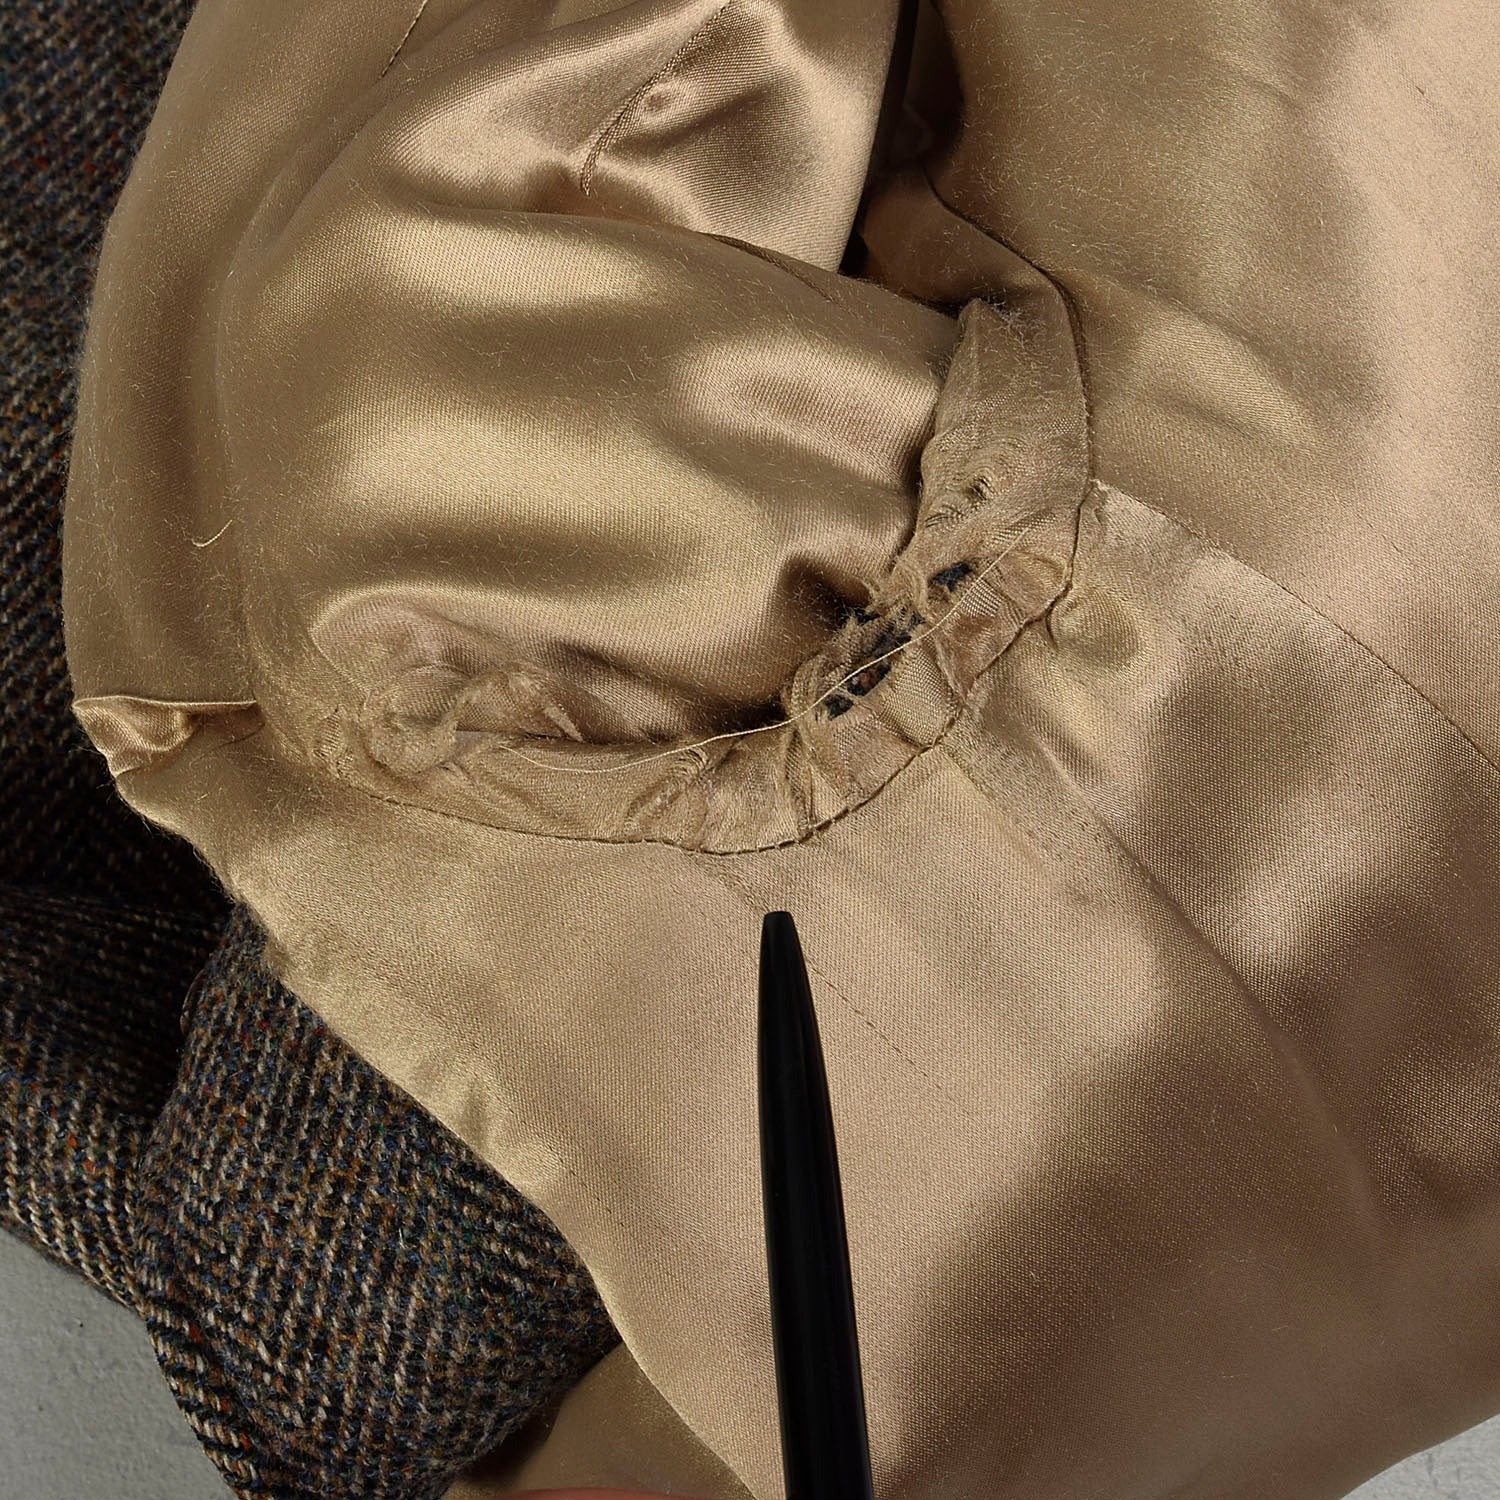 Medium 1970s Brown Wool Tweed Heavyweight Winter Coat